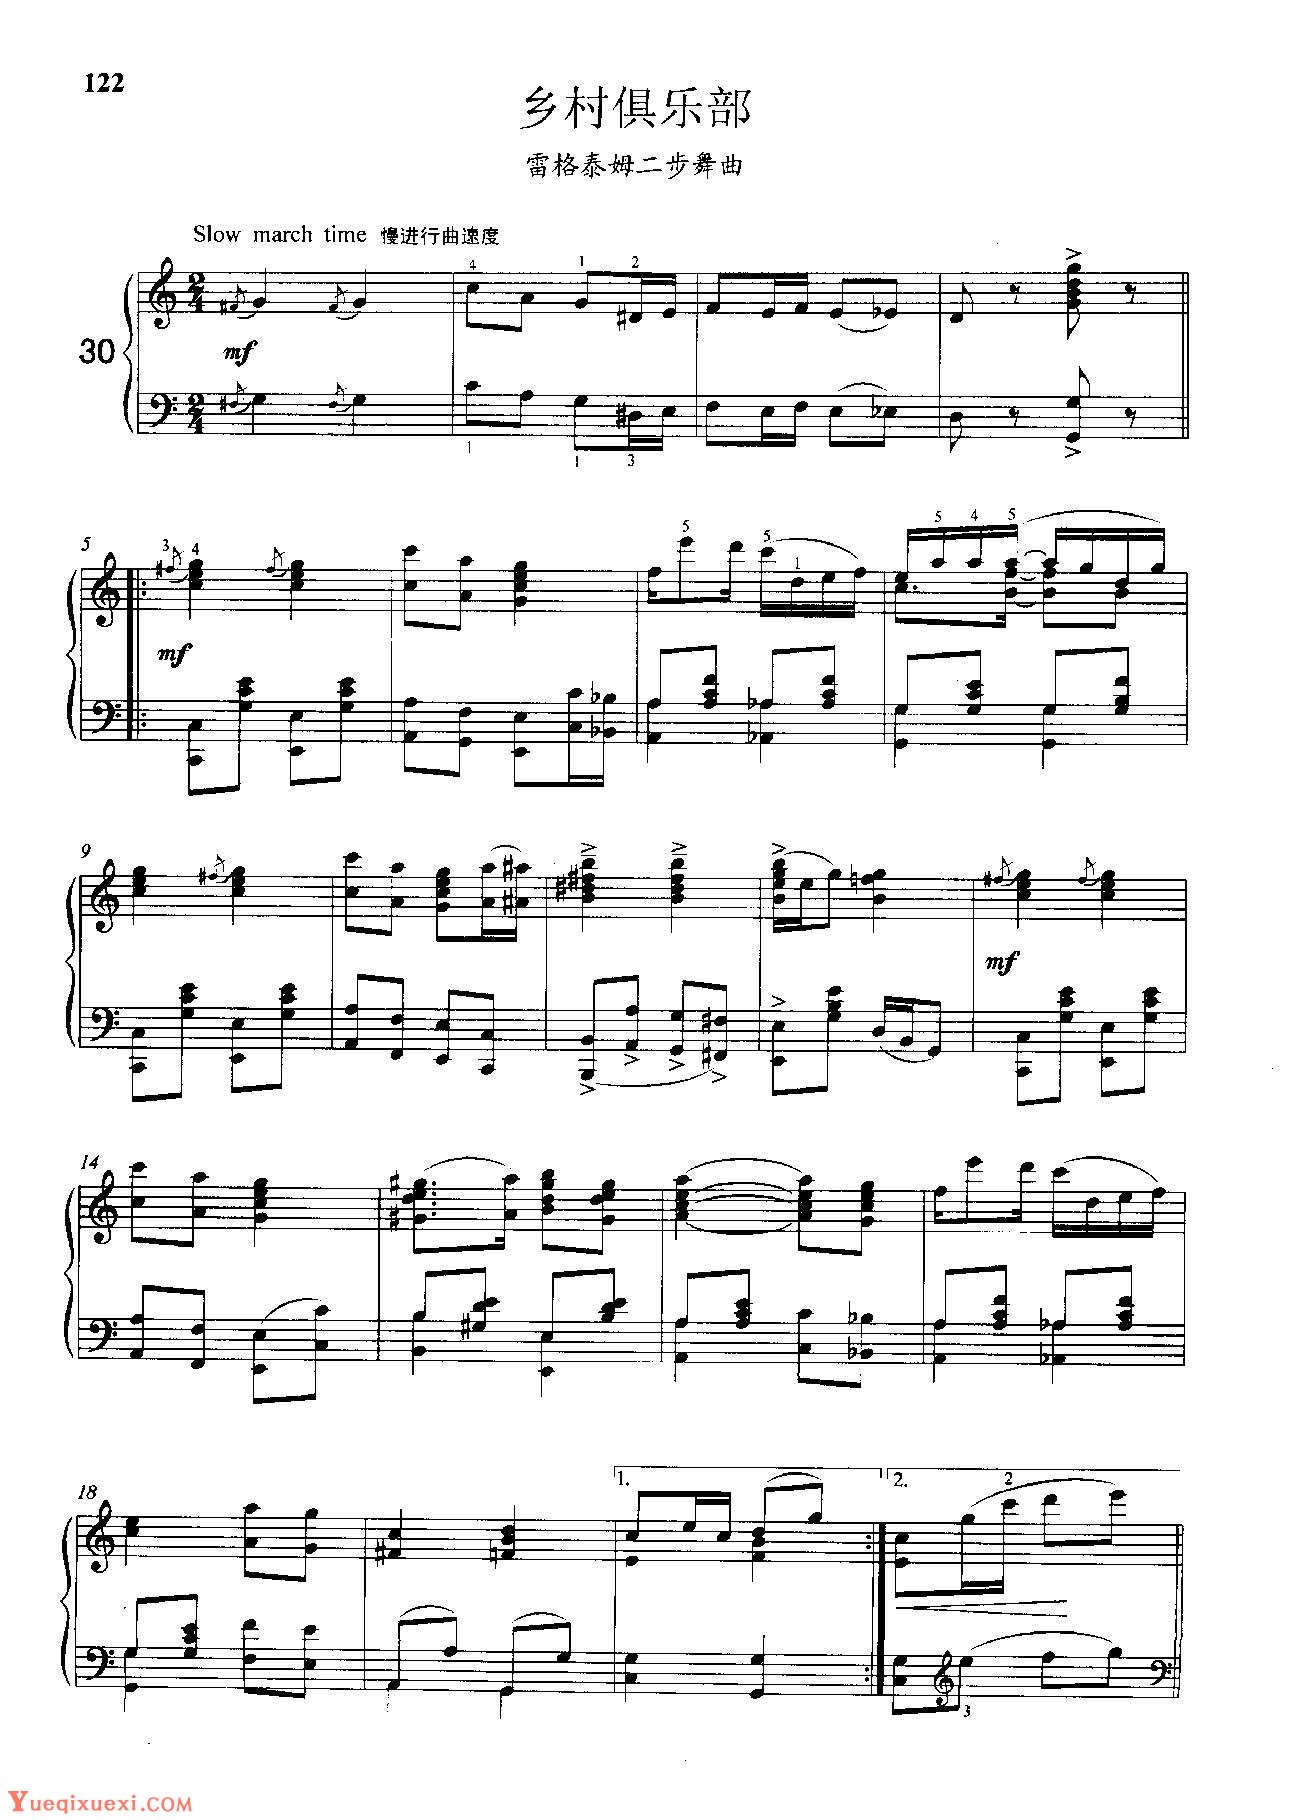 雷格泰姆钢琴乐谱《乡村俱乐部》雷格泰姆之王斯科特·乔普林